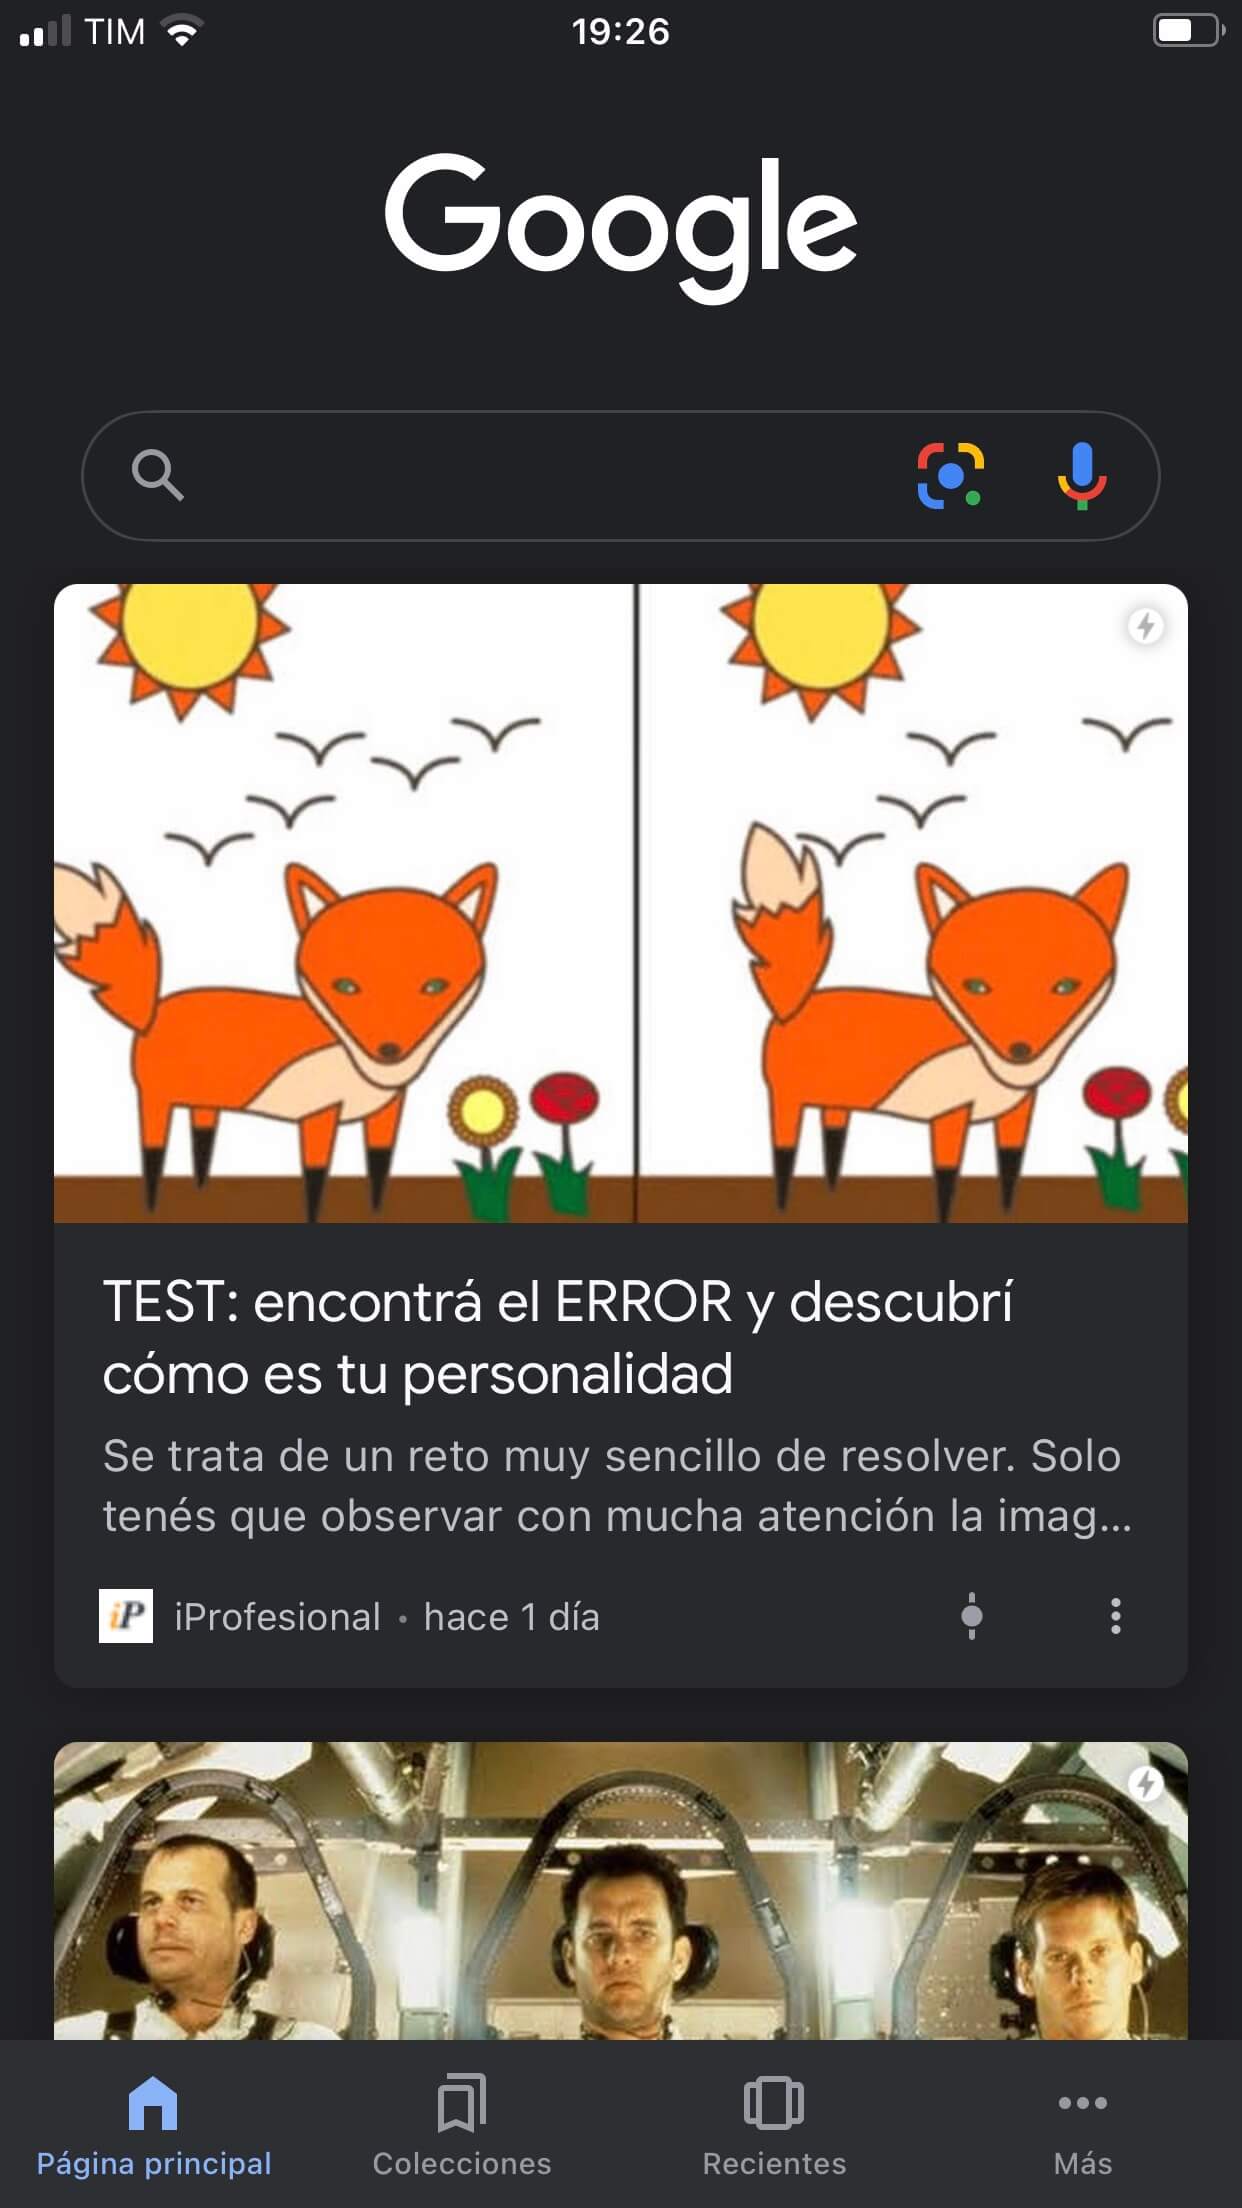 Google Discover en español